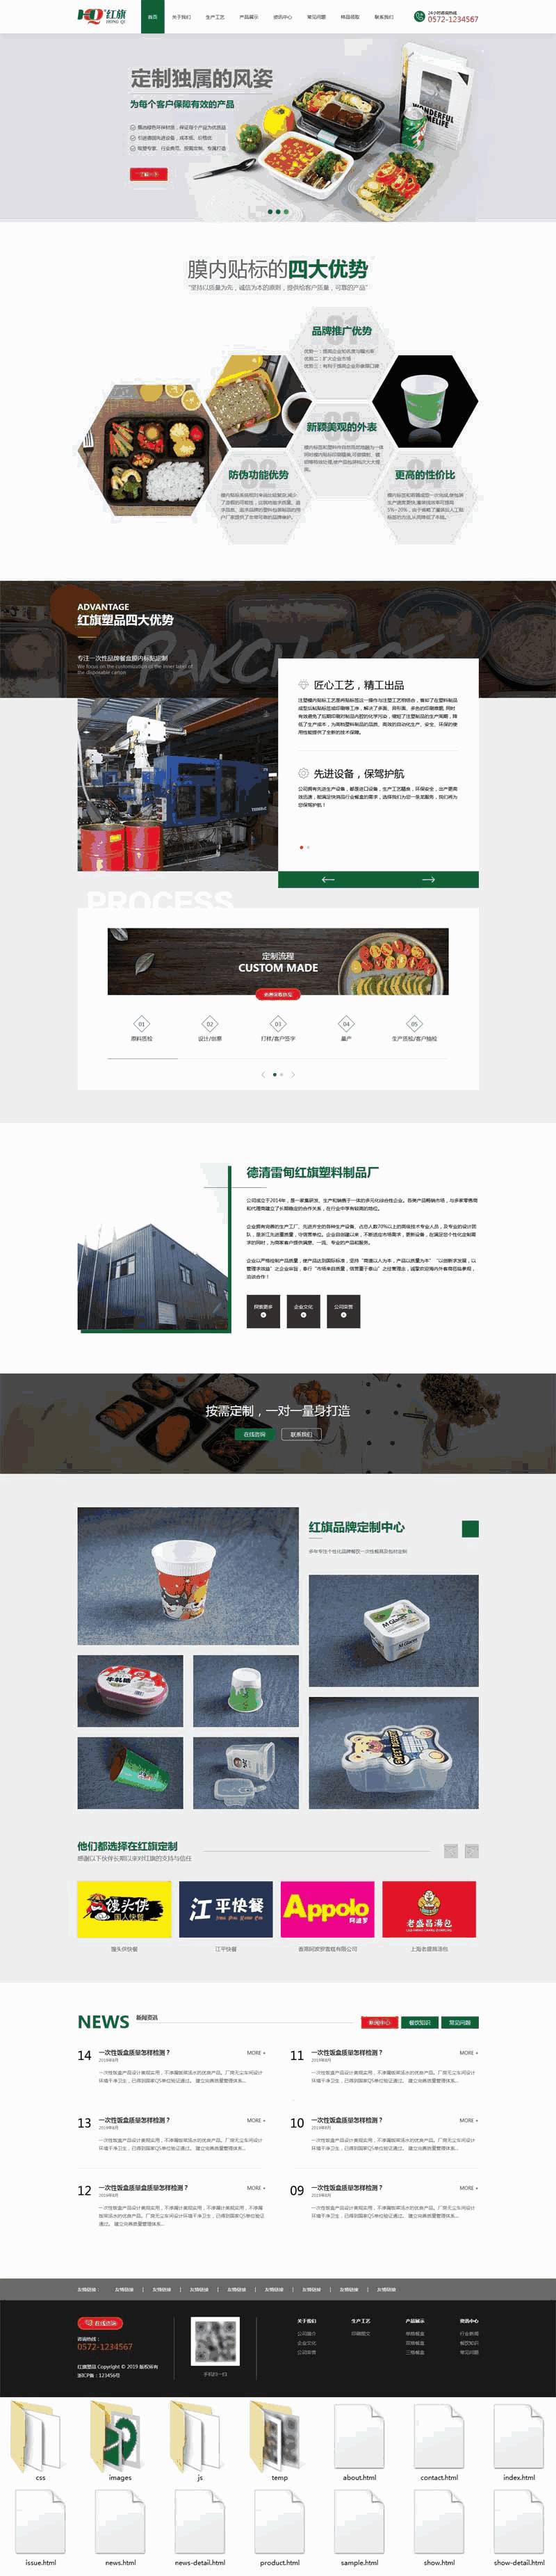 绿色环保的样品包装设计公司网站制作_网站建设模板演示图